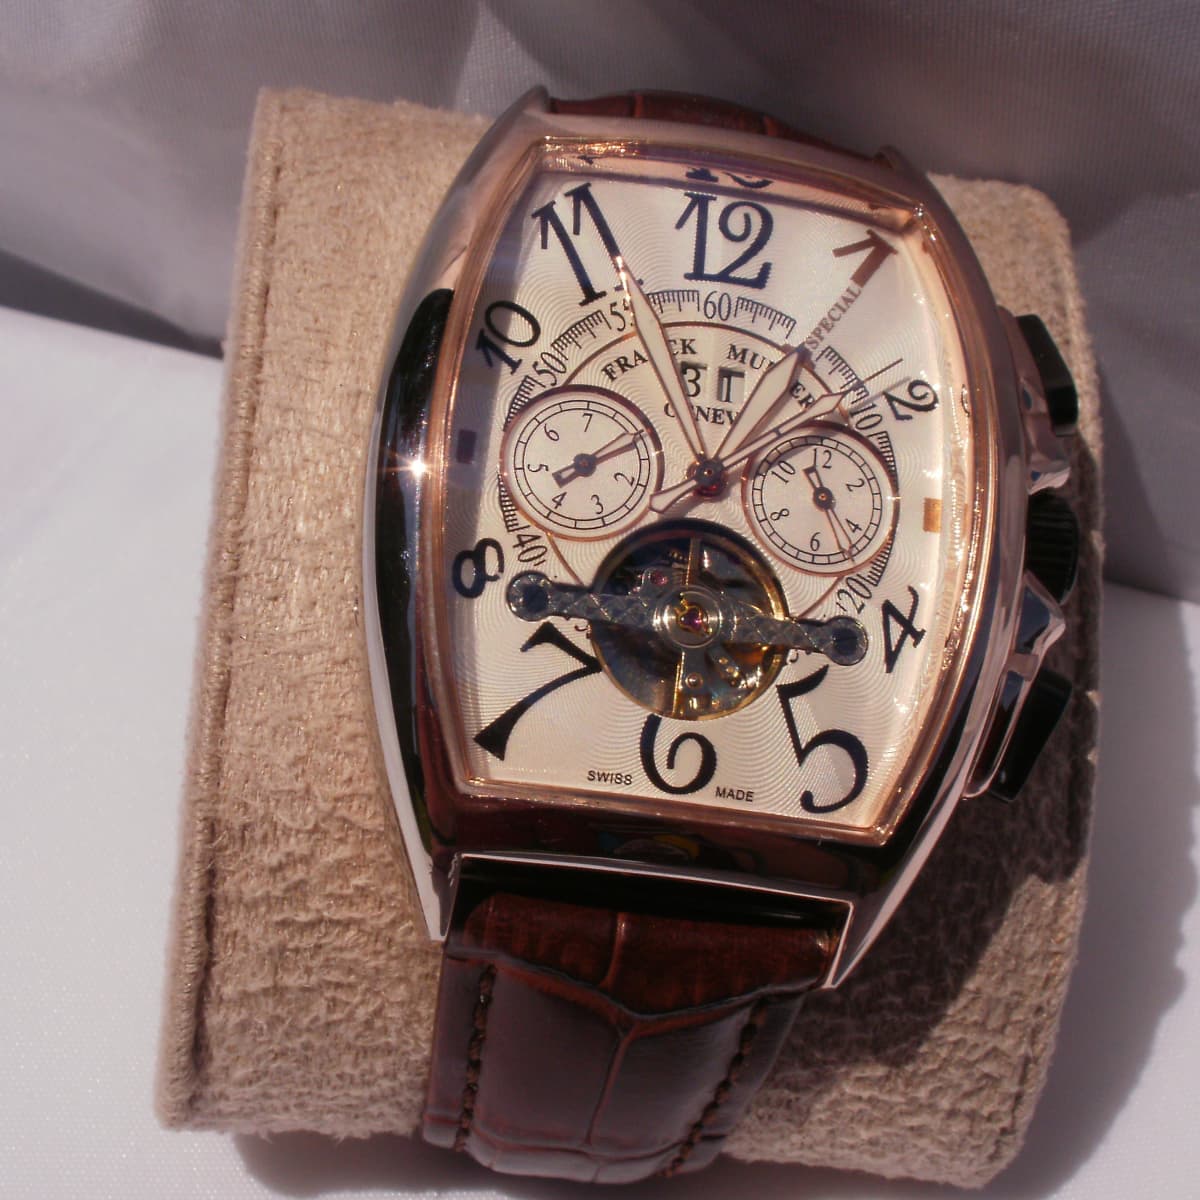 Часы фрэнк. Часы Franck Muller 344 1932. Часы Franck Muller 1932. Фрэнк Мюллер Женева часы. Часы Франк Мюллер Geneve.